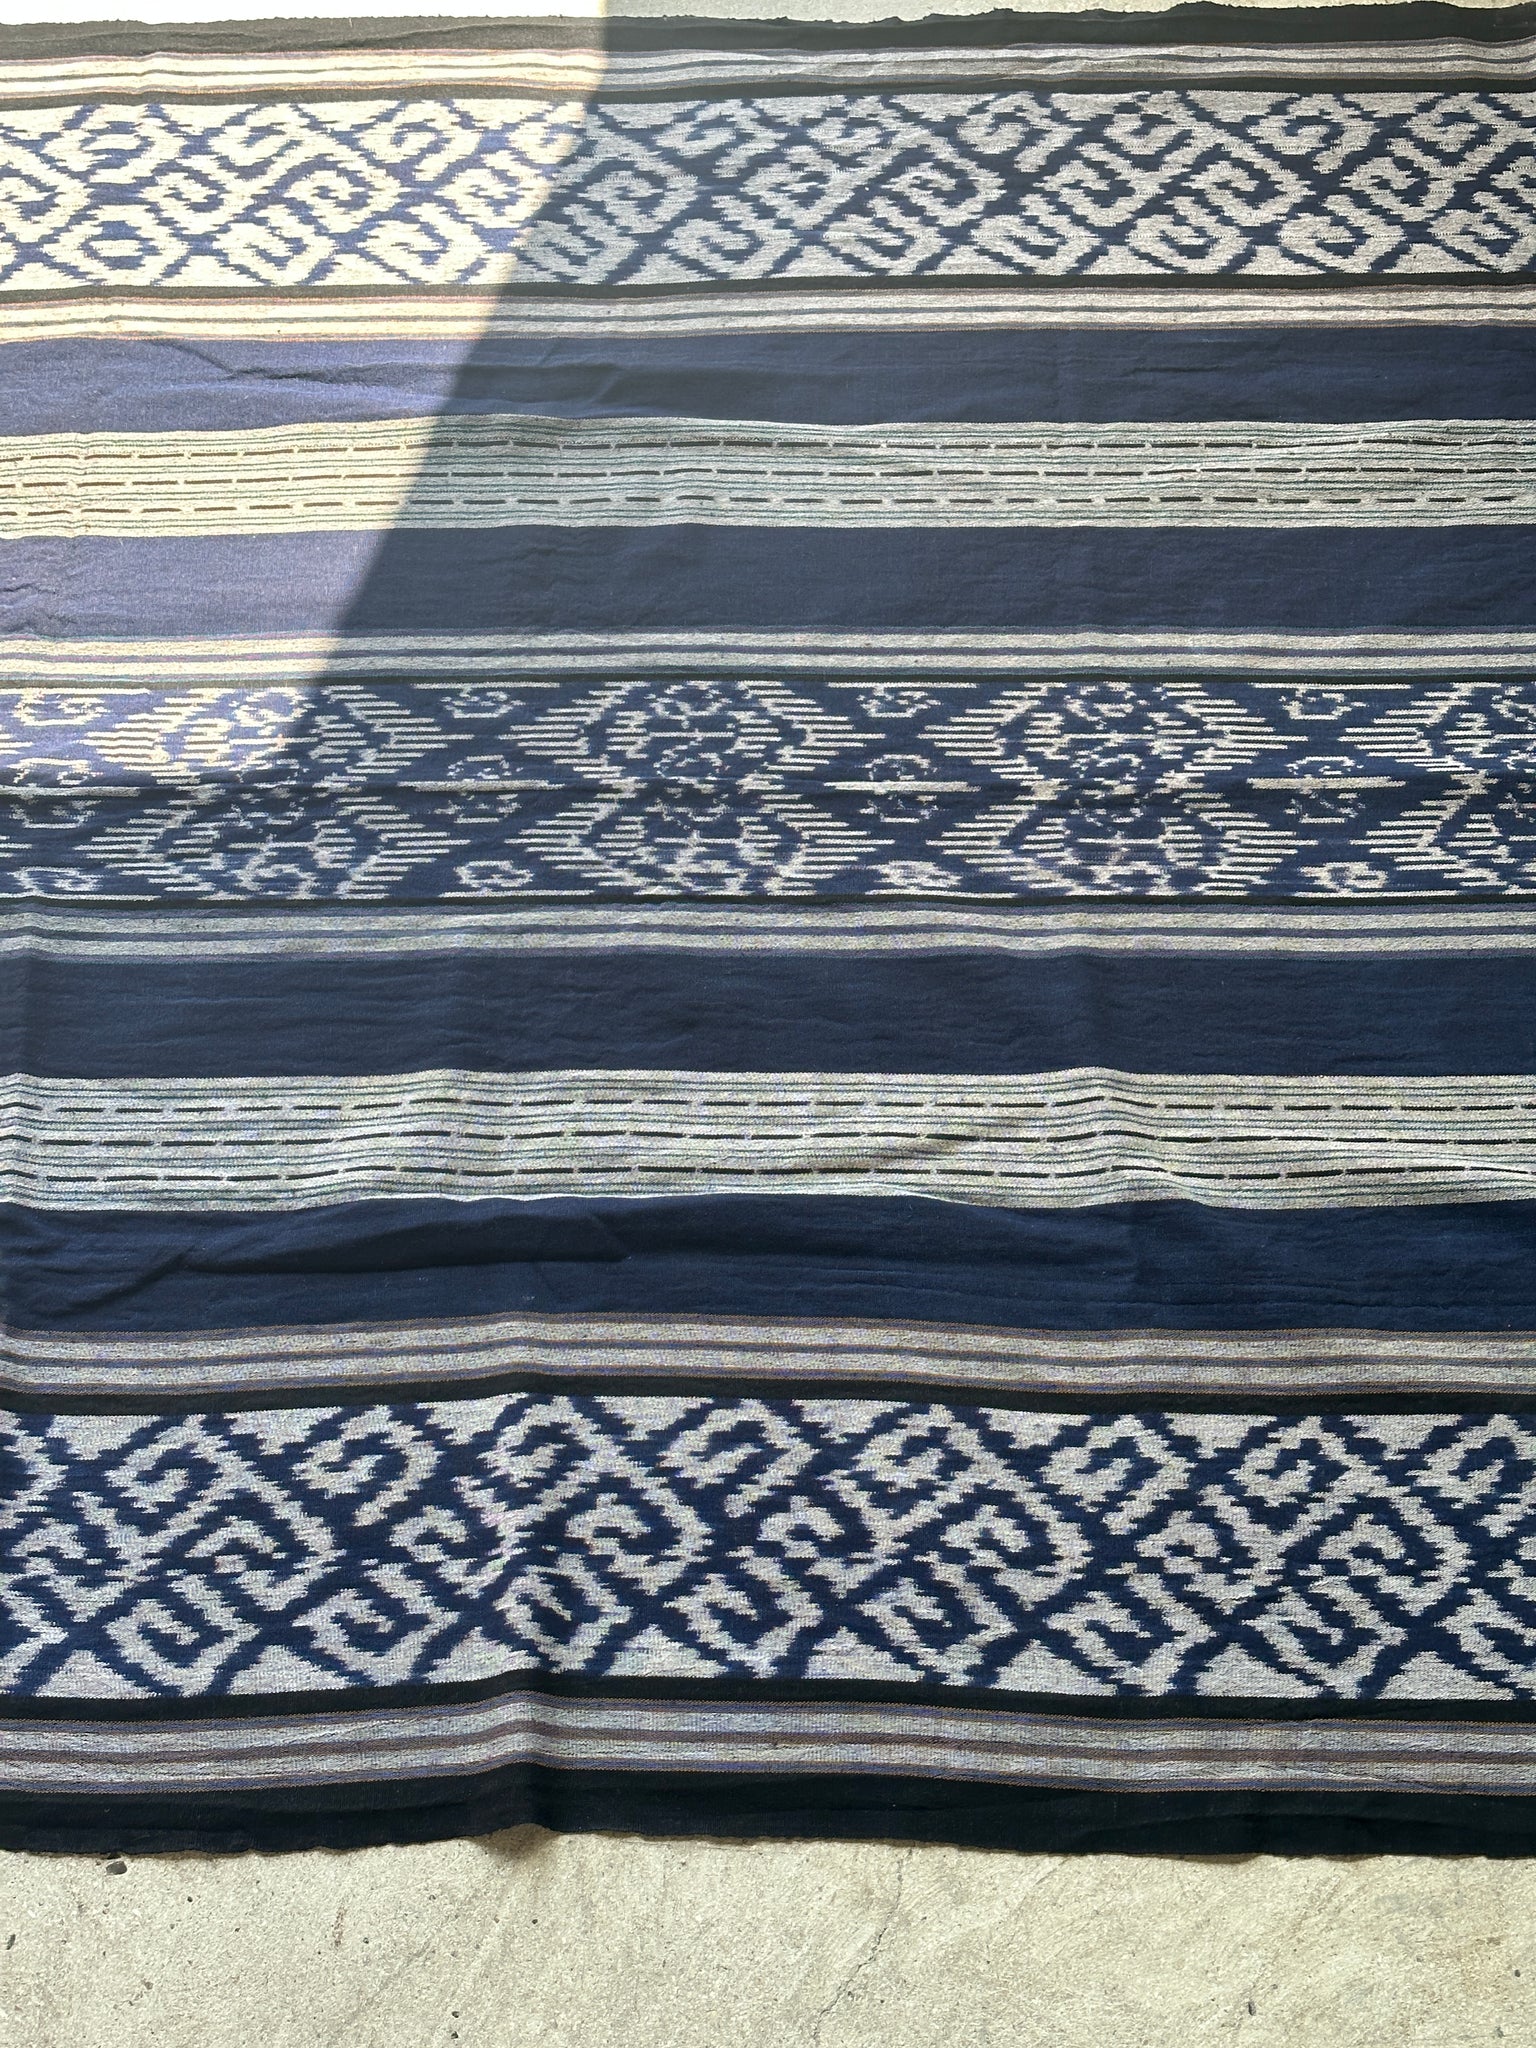 Grand ikat bleu et blanc à motif de losange 2m35x1m15